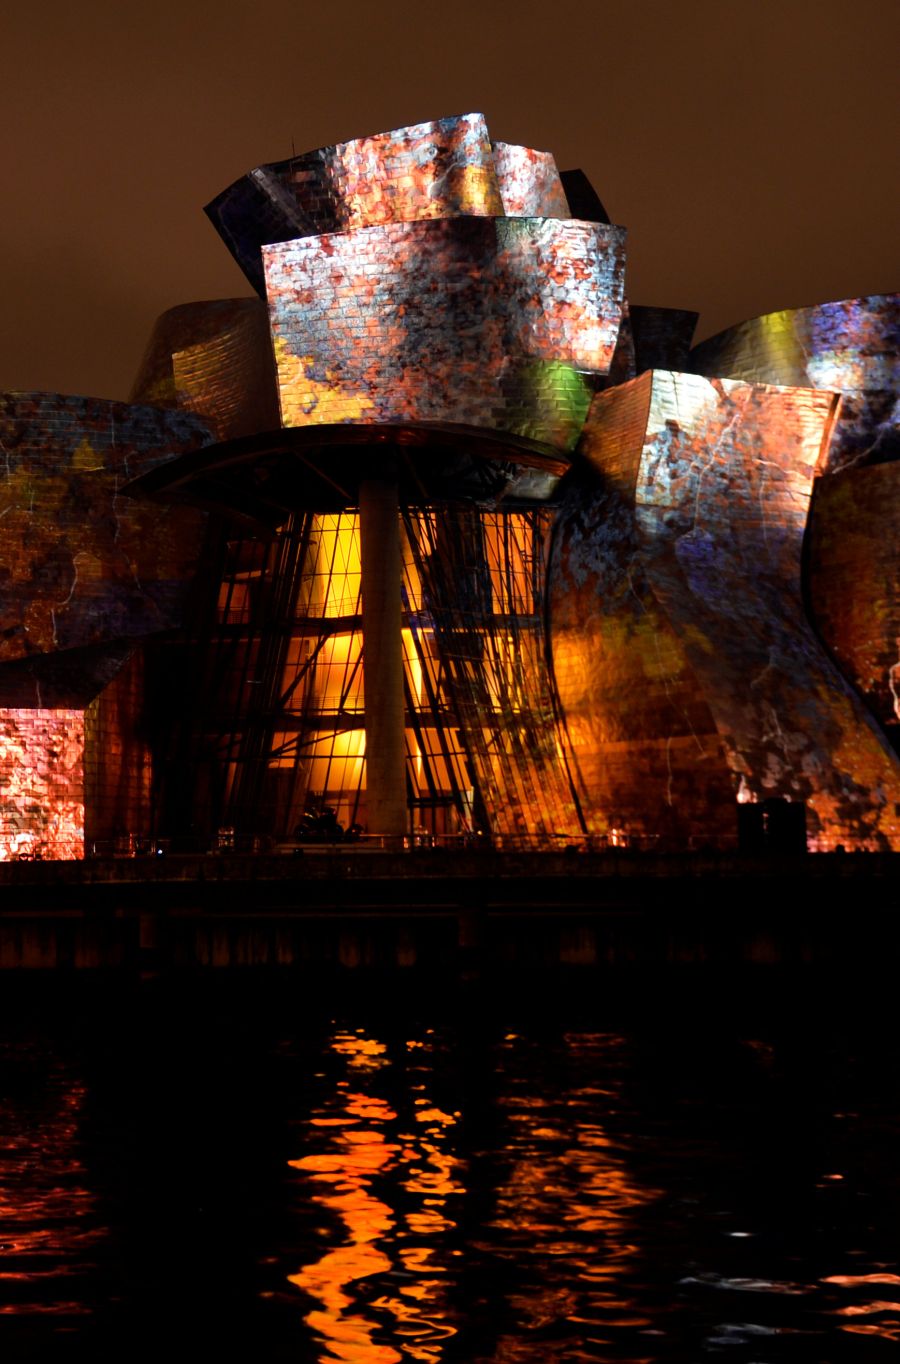 El vigésimo aniversario del Guggenheim llenó de luz el museo con el espectáculo 'Reflections', que no defraudó a nadie